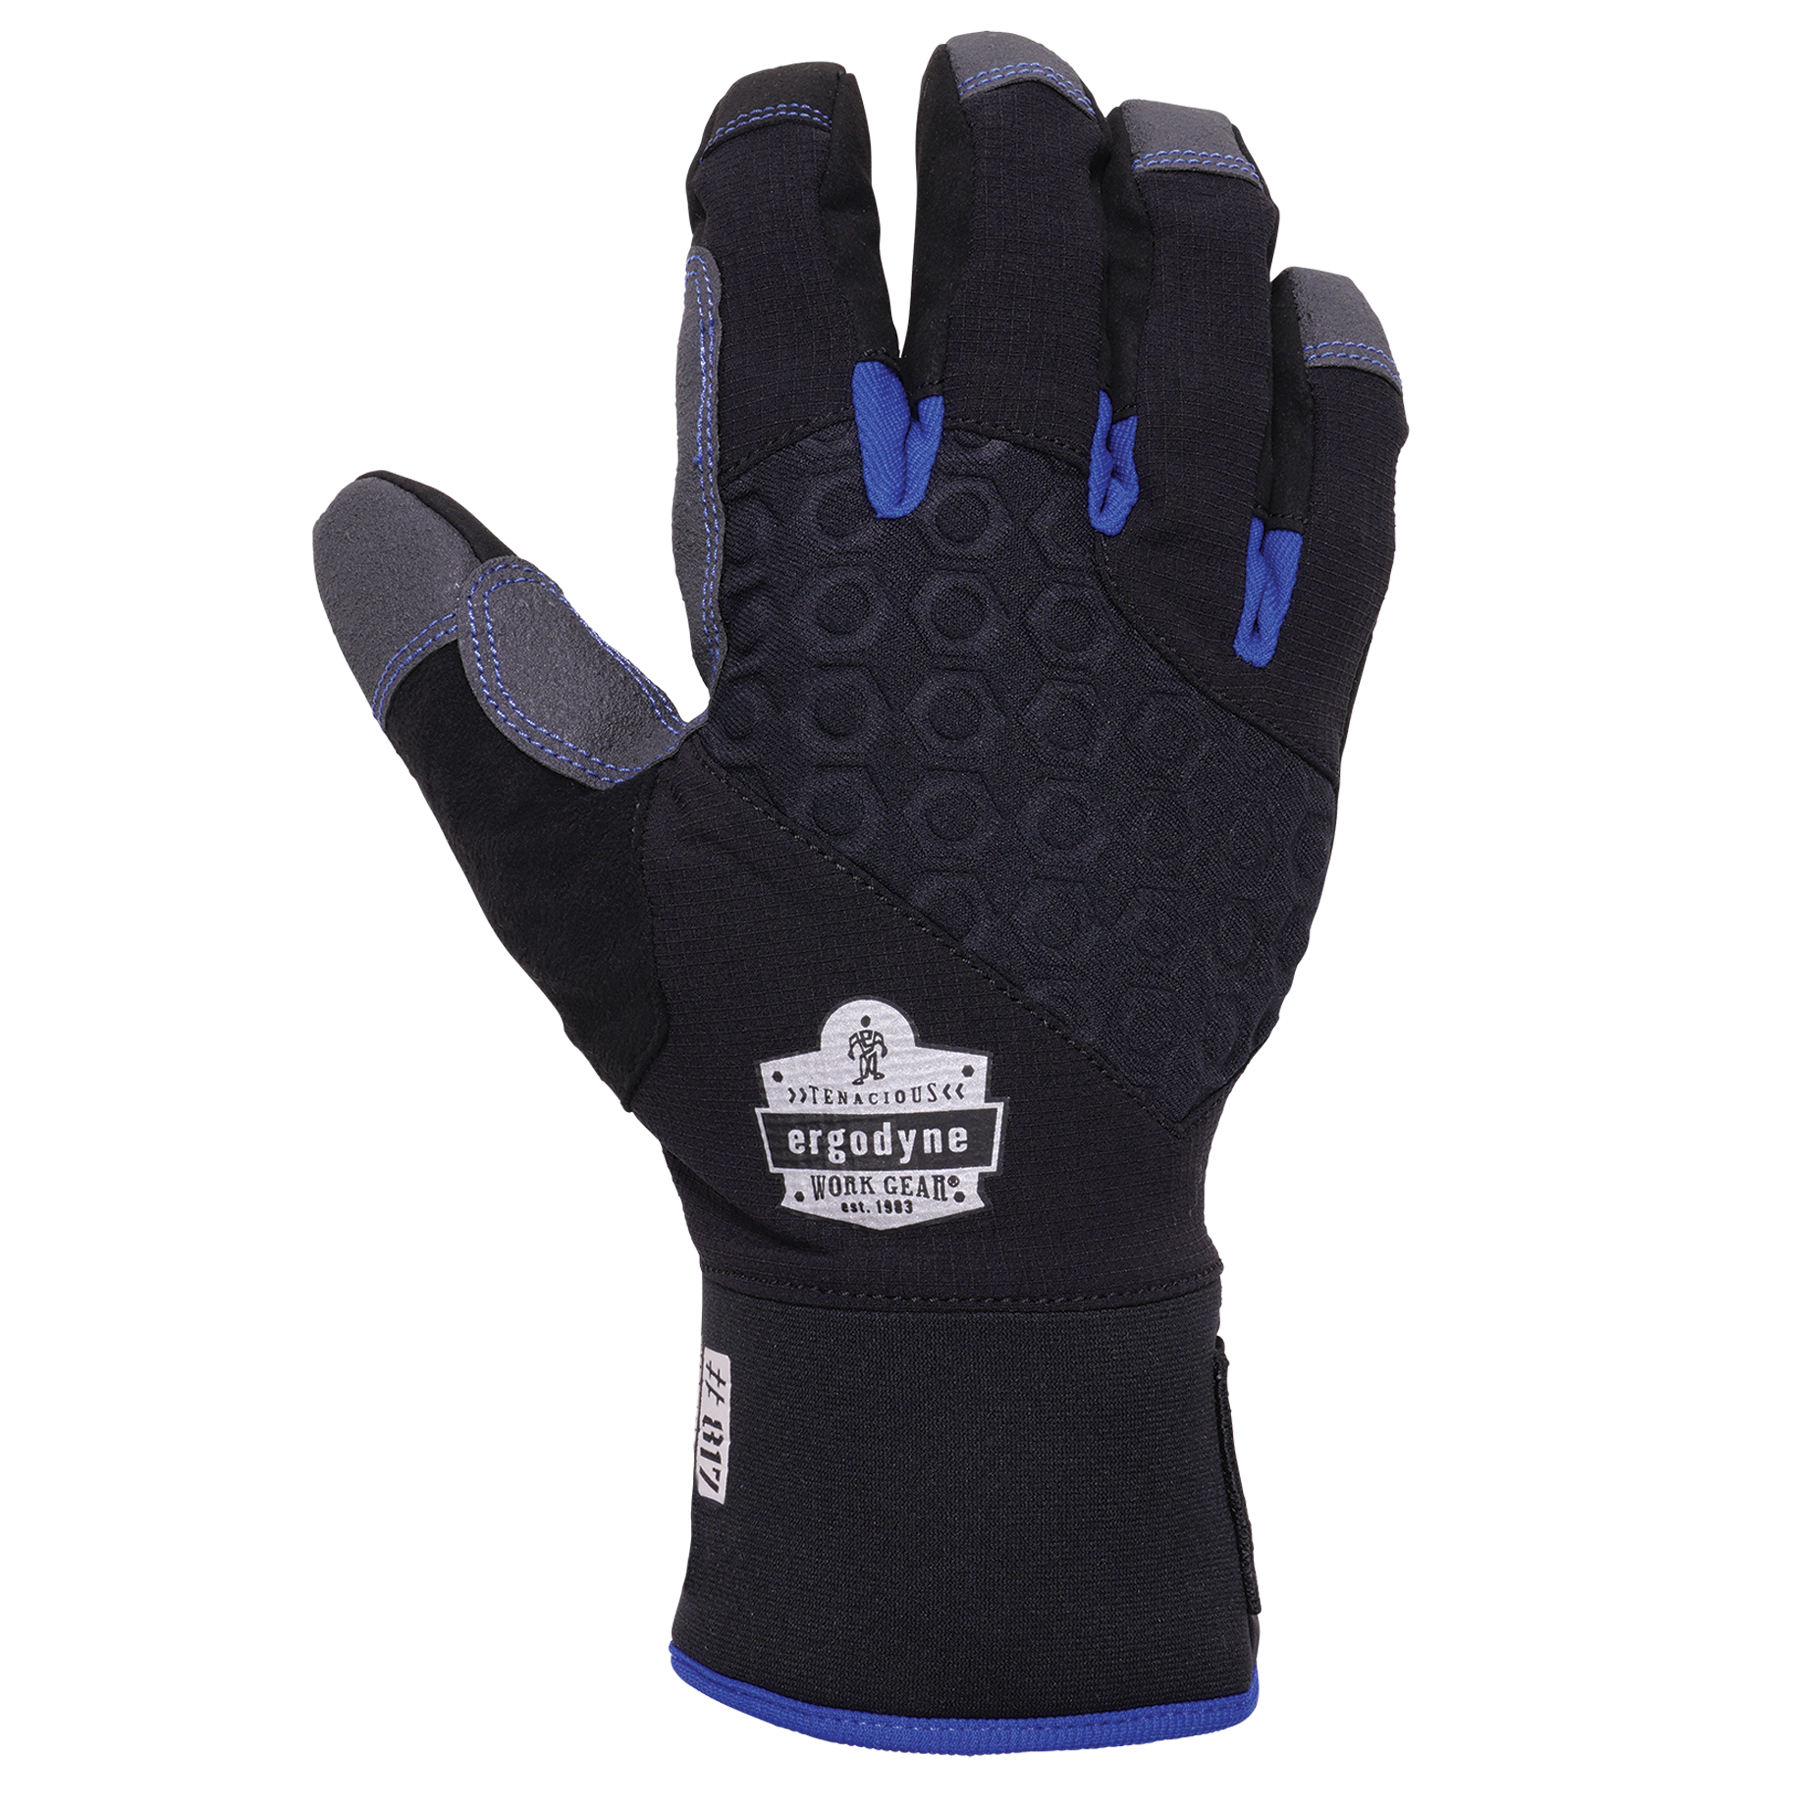 https://www.ergodyne.com/sites/default/files/product-images/17352-817-thermal-winter-work-gloves-black-dorsal.jpg